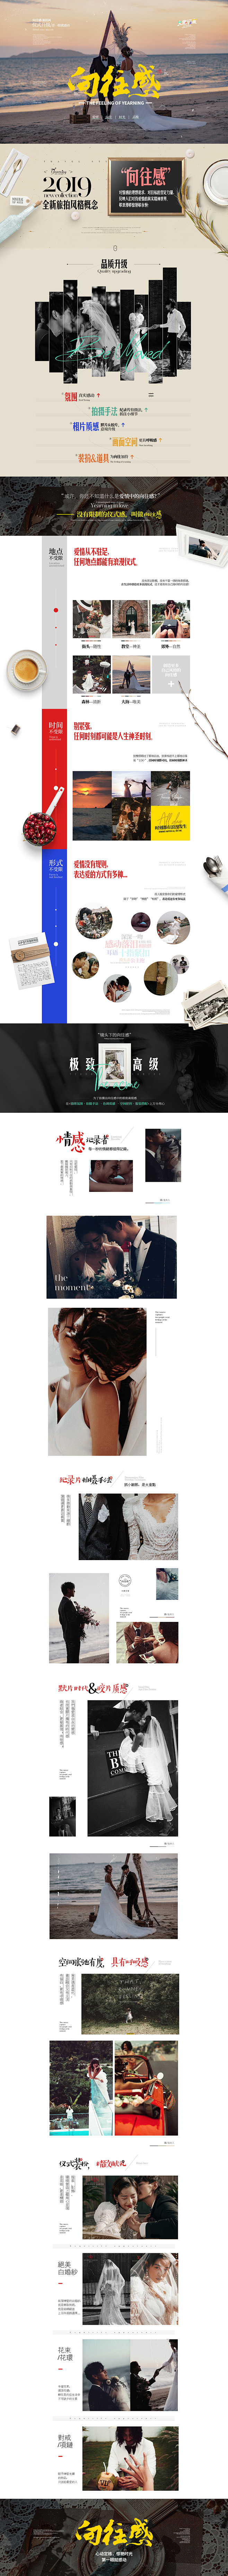 #成都金夫人婚纱摄影网页专题设计# 大旅...